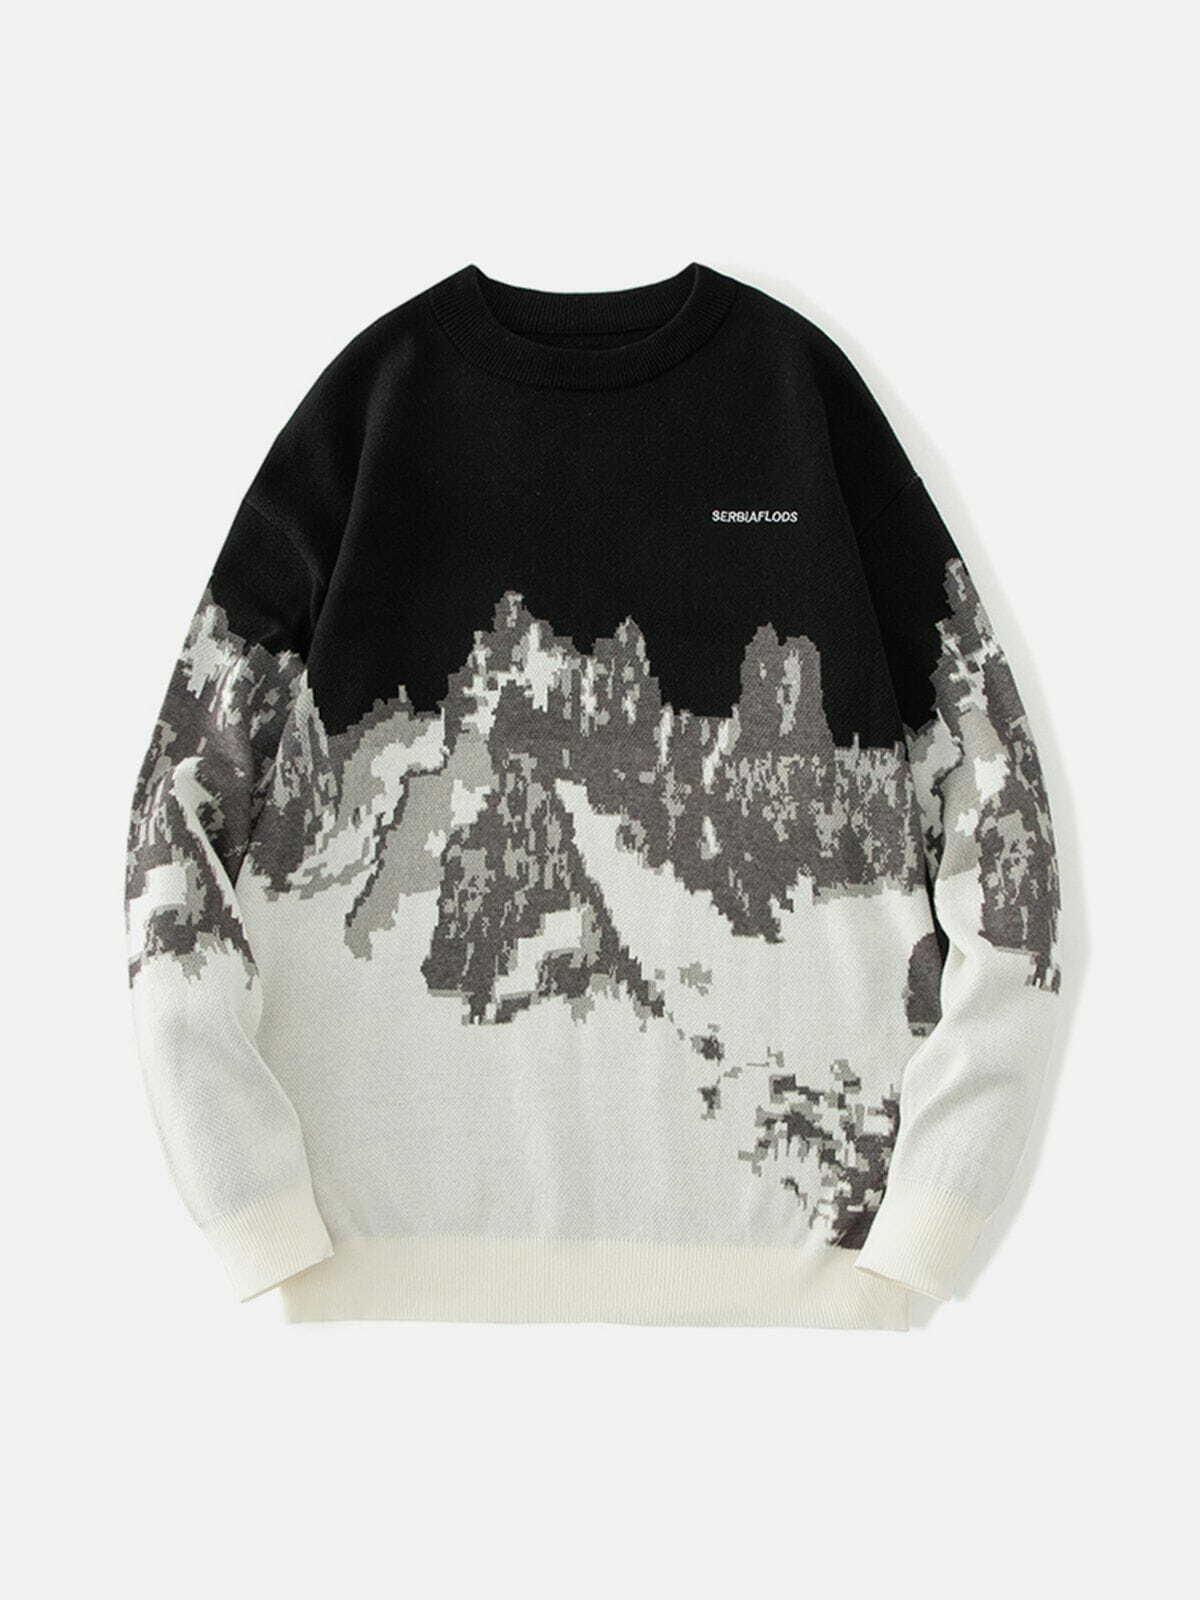 mountain landscape jacquard sweater edgy y2k streetwear 4339